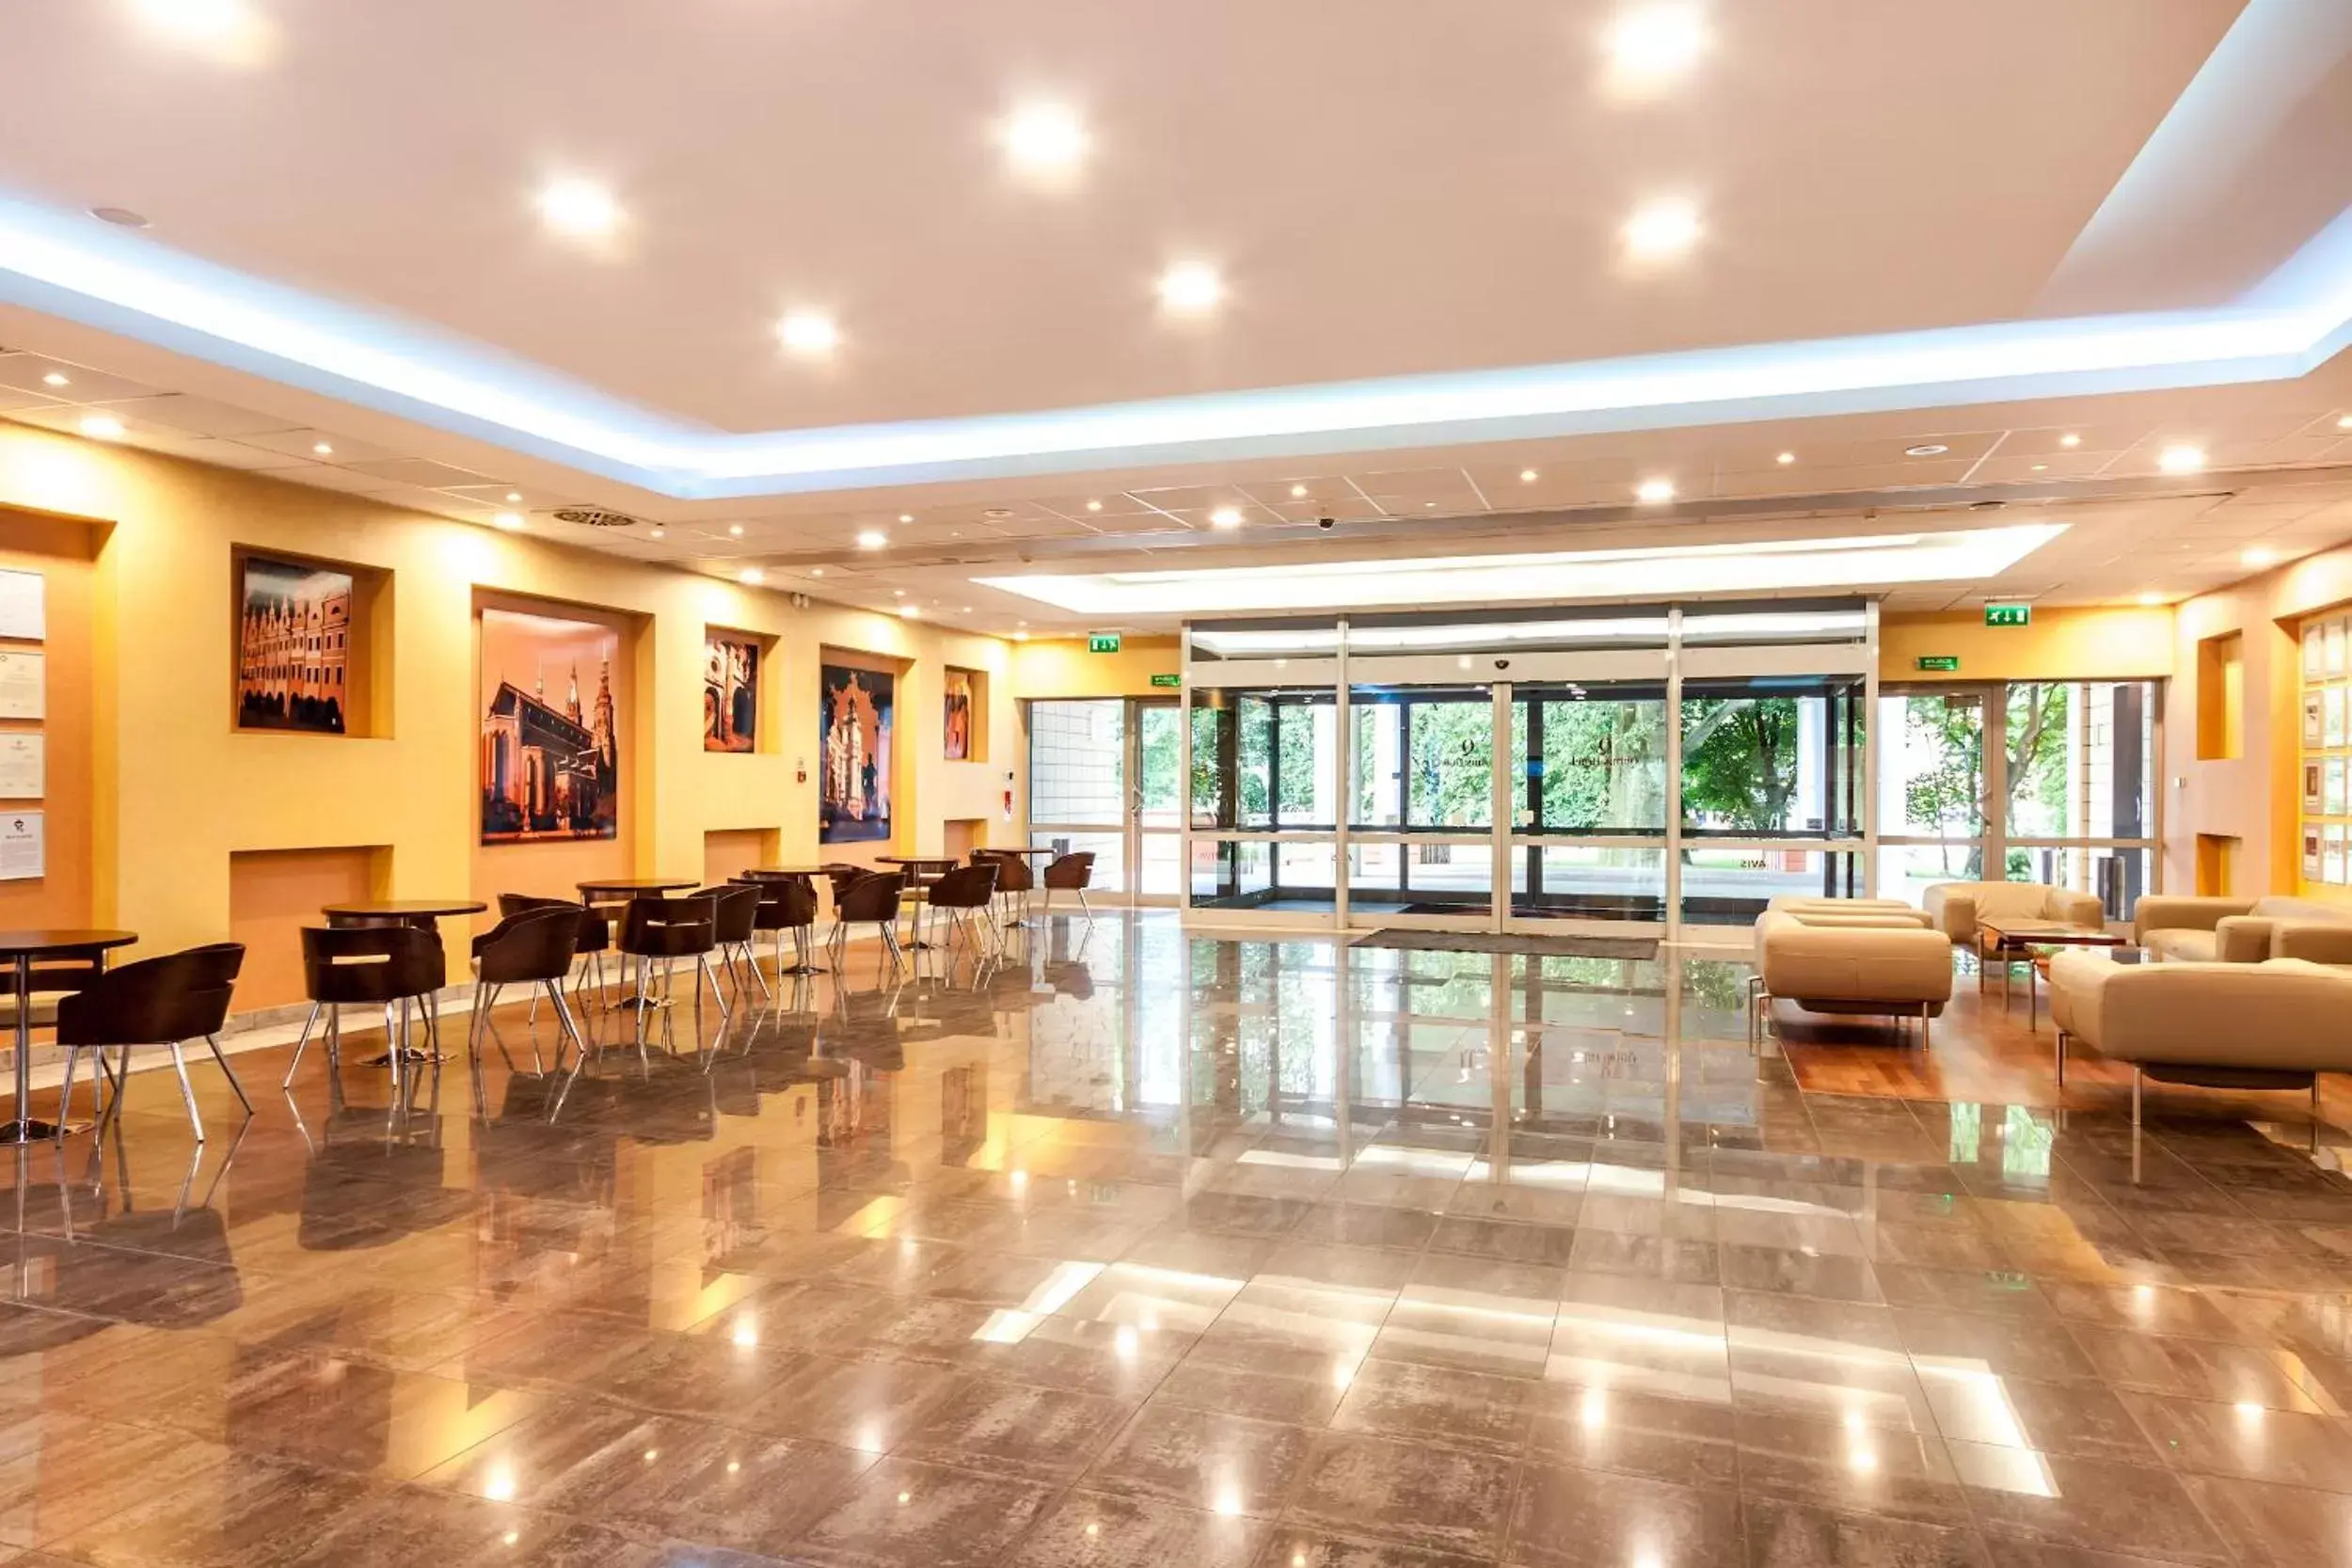 Lobby or reception, Lobby/Reception in Qubus Hotel Legnica